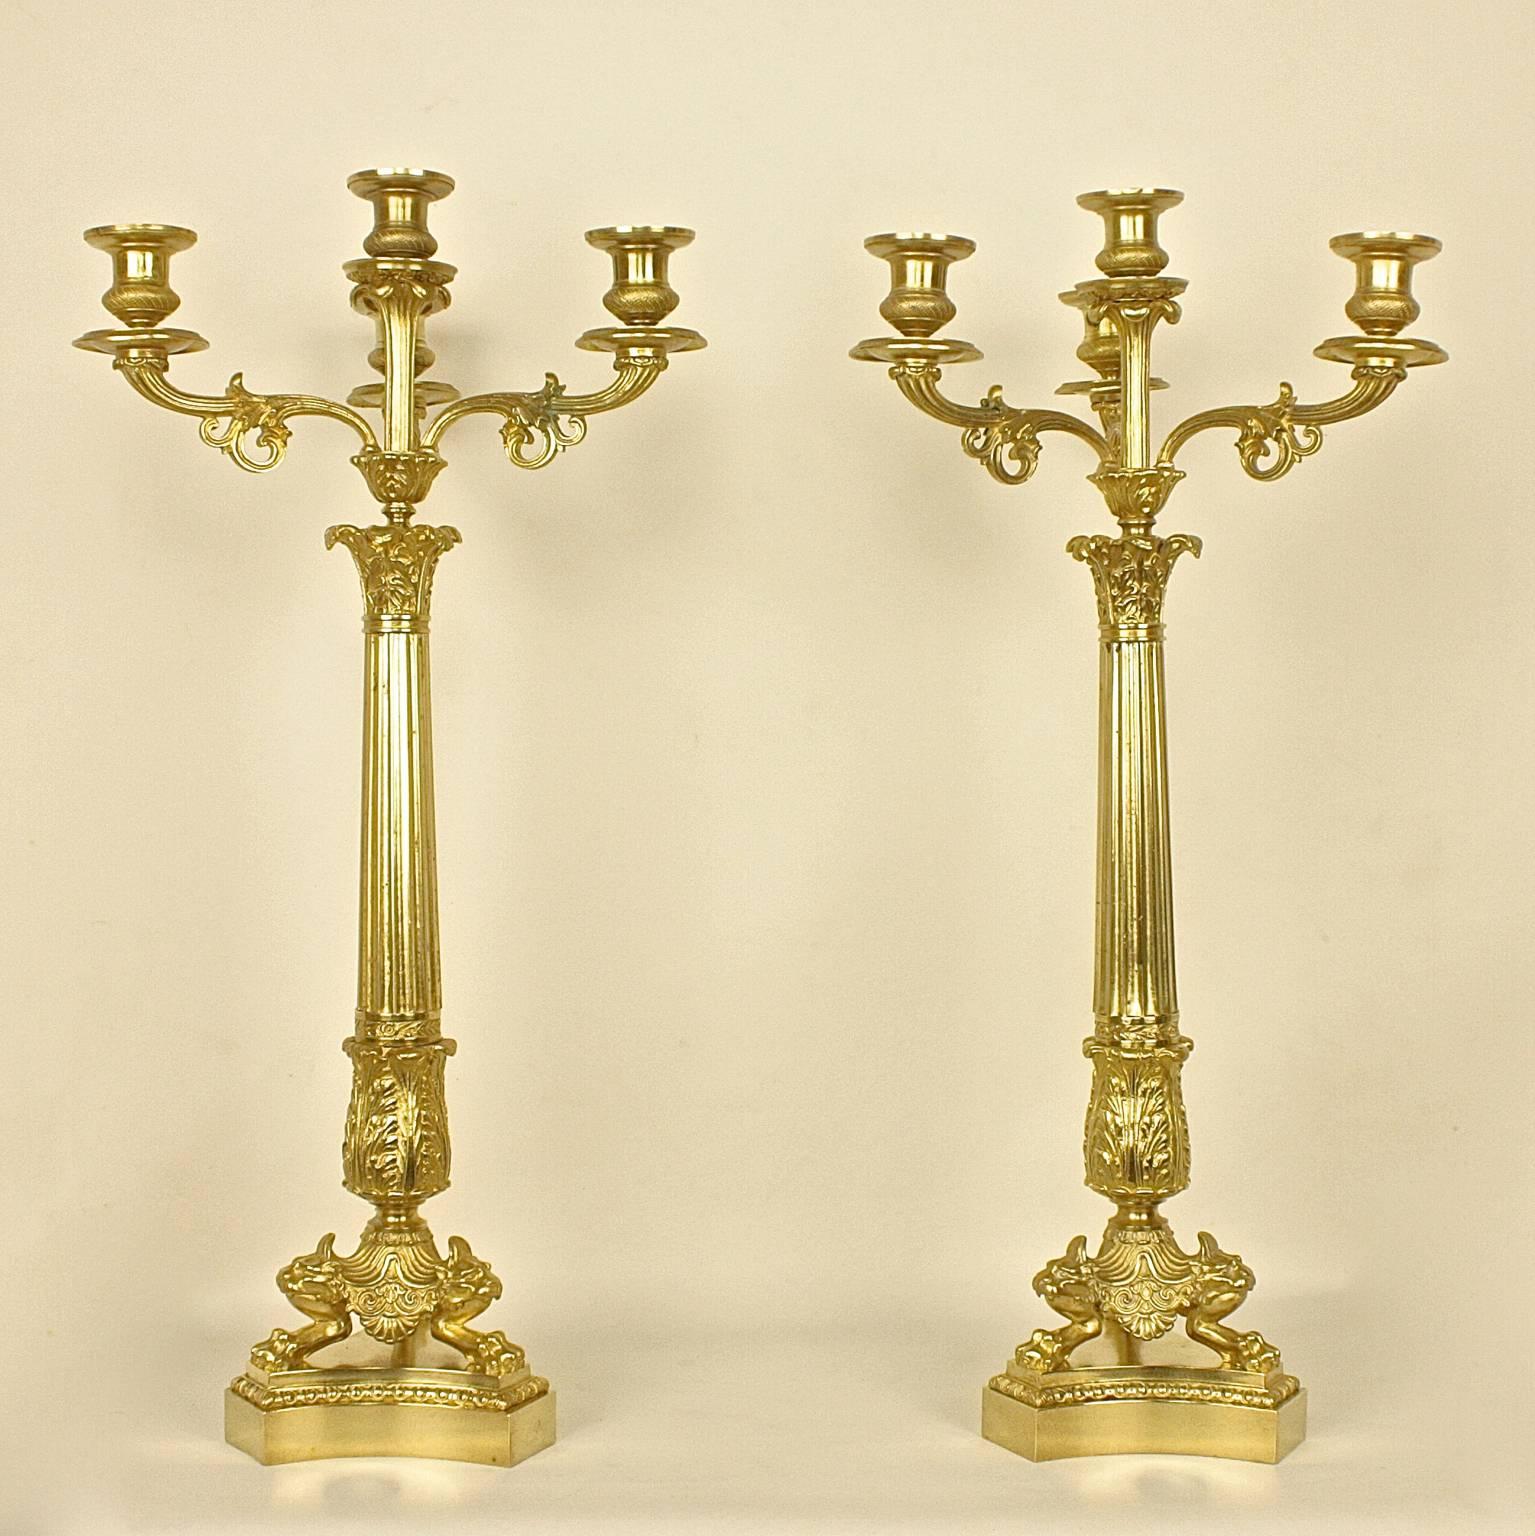 Paar Kandelaber aus vergoldeter Bronze des 19. Jahrhunderts, jeder mit einem sich verjüngenden, geriffelten Stiel, der drei mit Blättern besetzte Kerzenzweige und einen zentralen Zweig trägt, erhöht auf einem Löwenkopf und einer Tatze, auf einem 